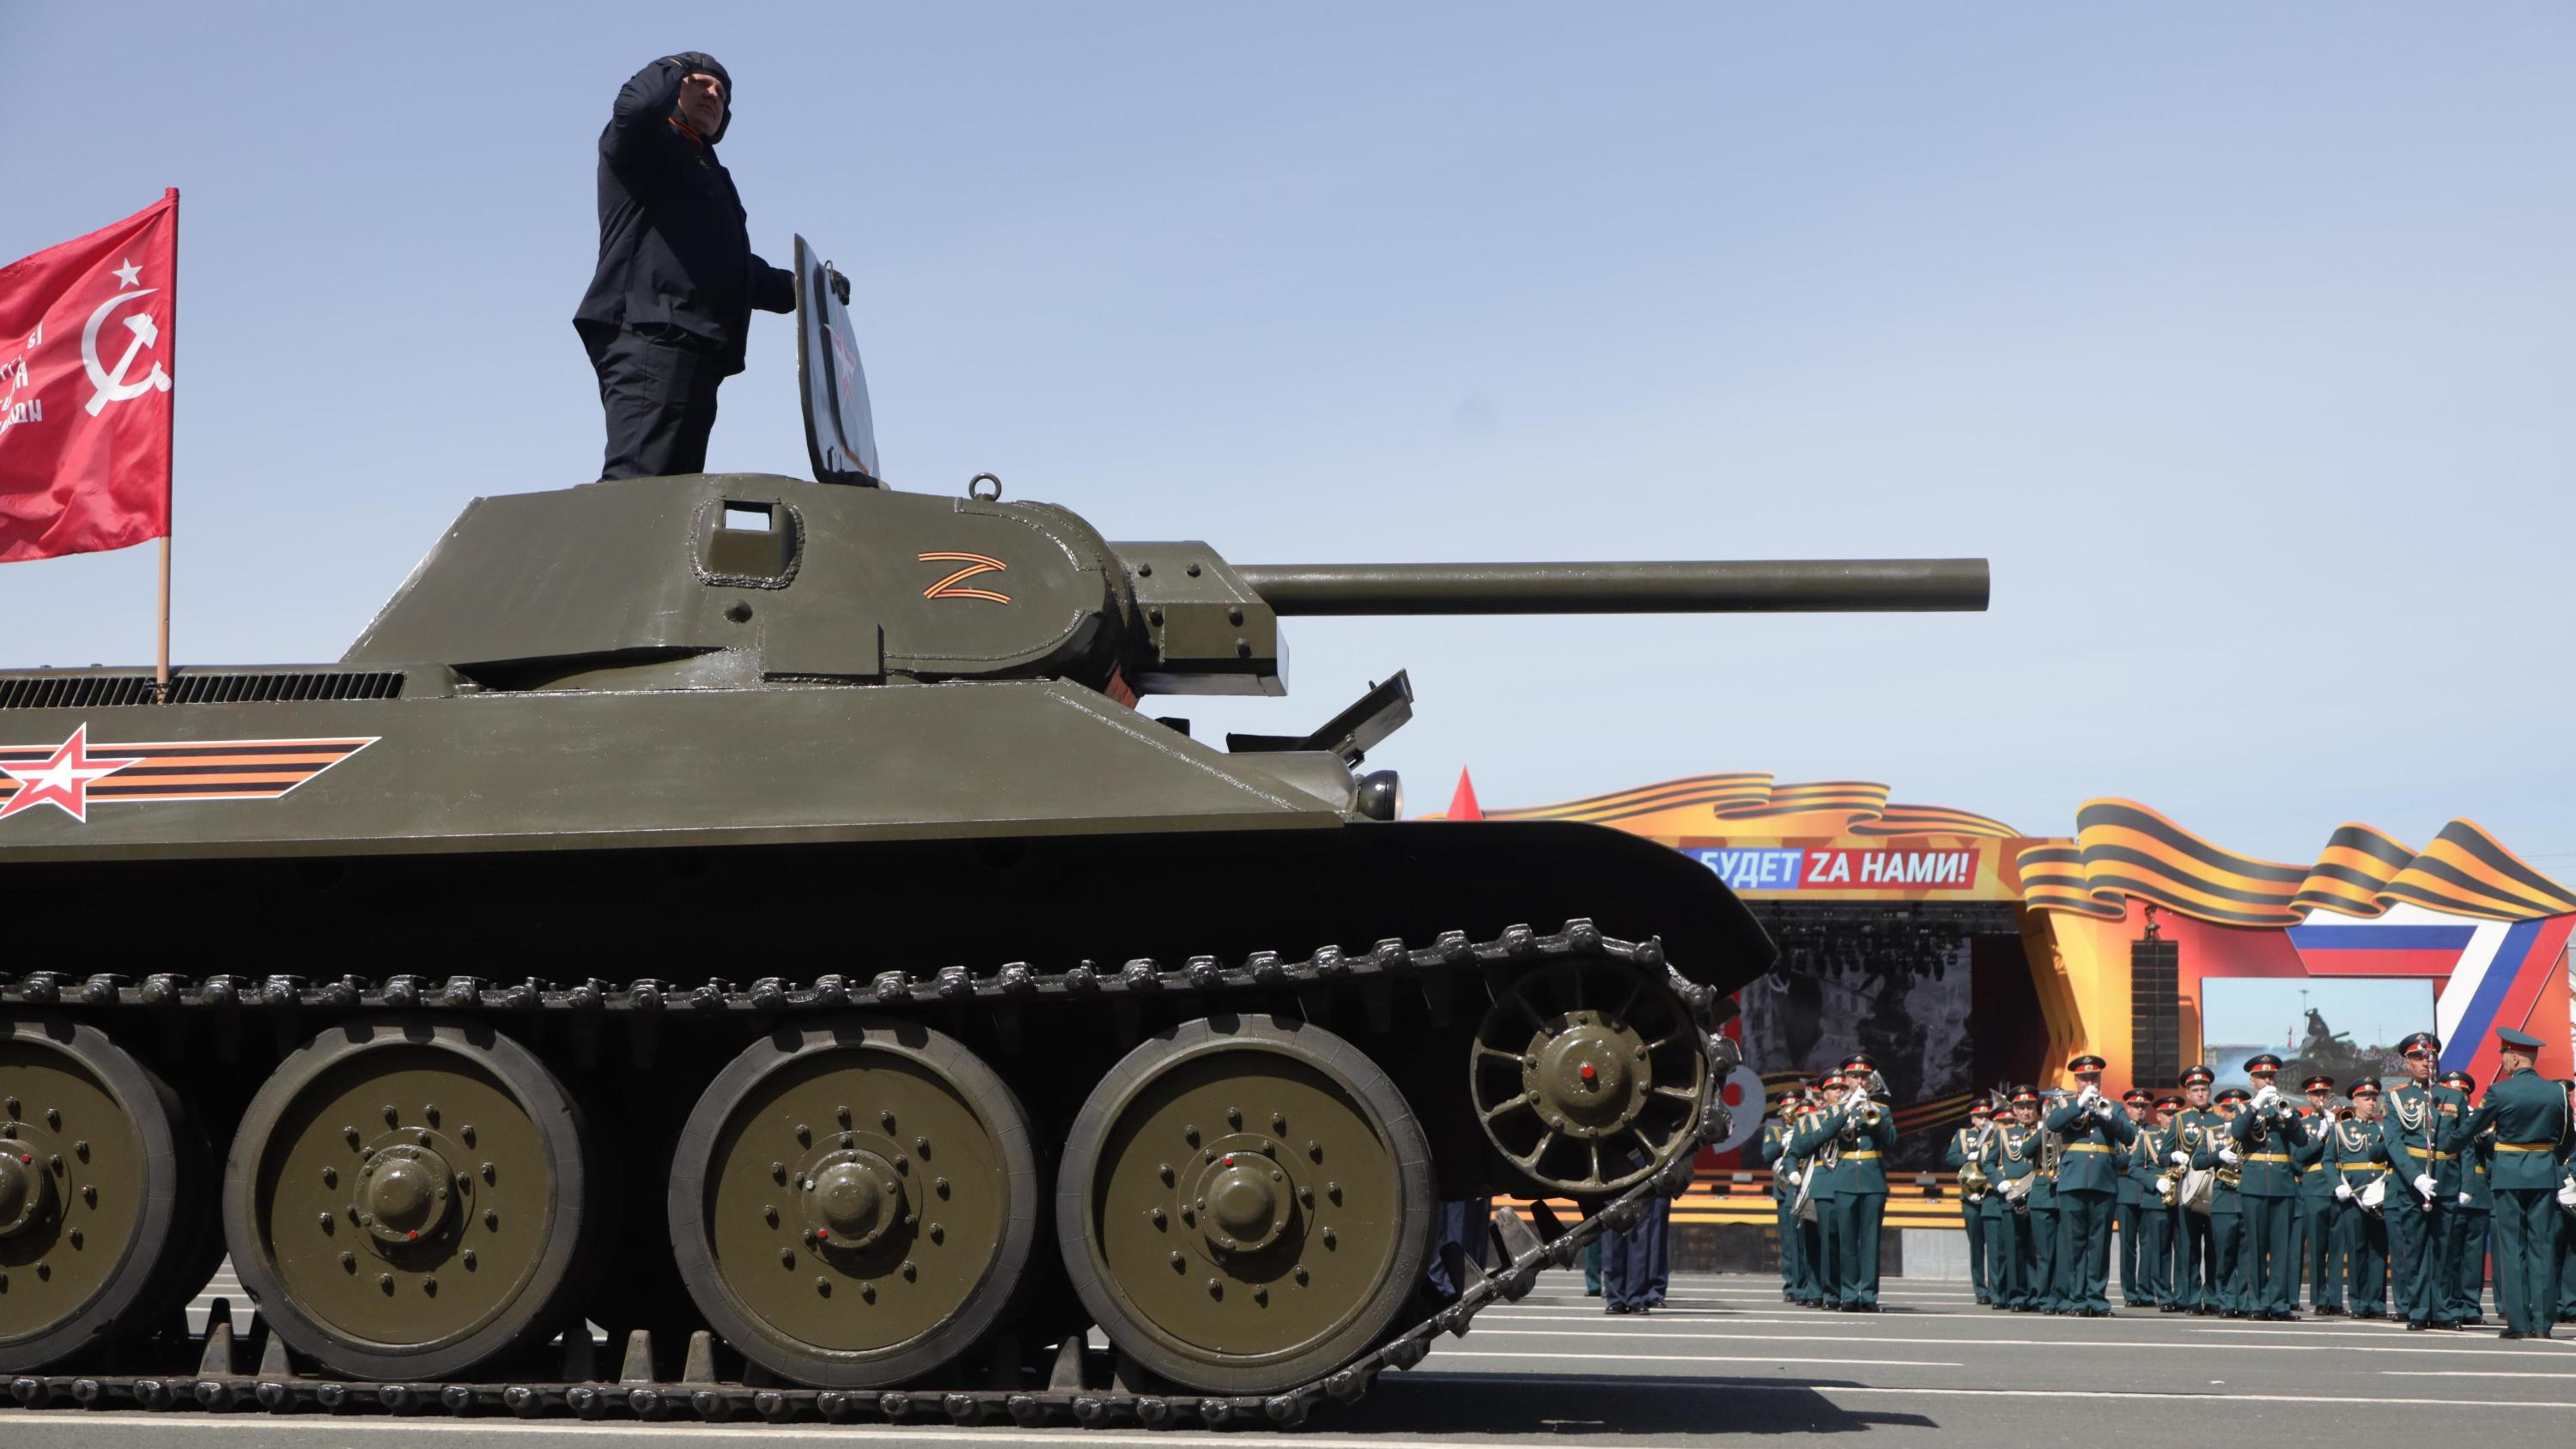 Отдых с солдатской кашей и видом на танк. Чем жителям Самары занять себя в длинные выходные